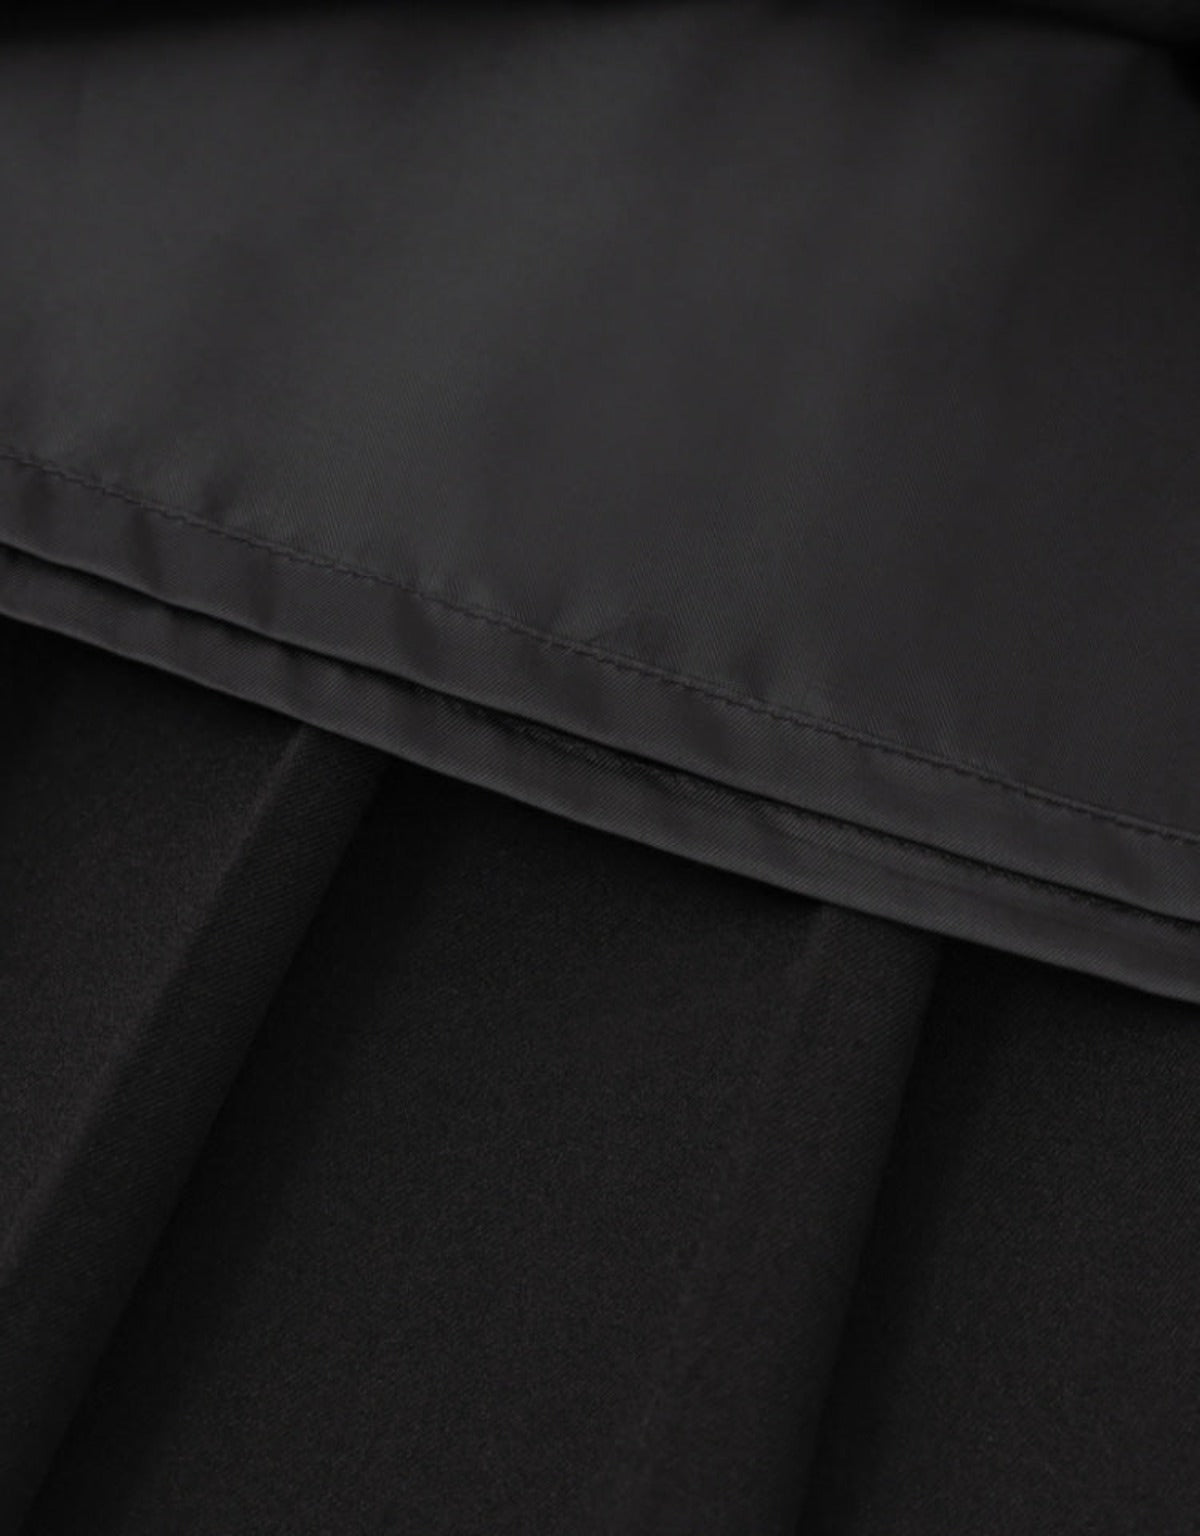 Pleats Midi Skirt In Black